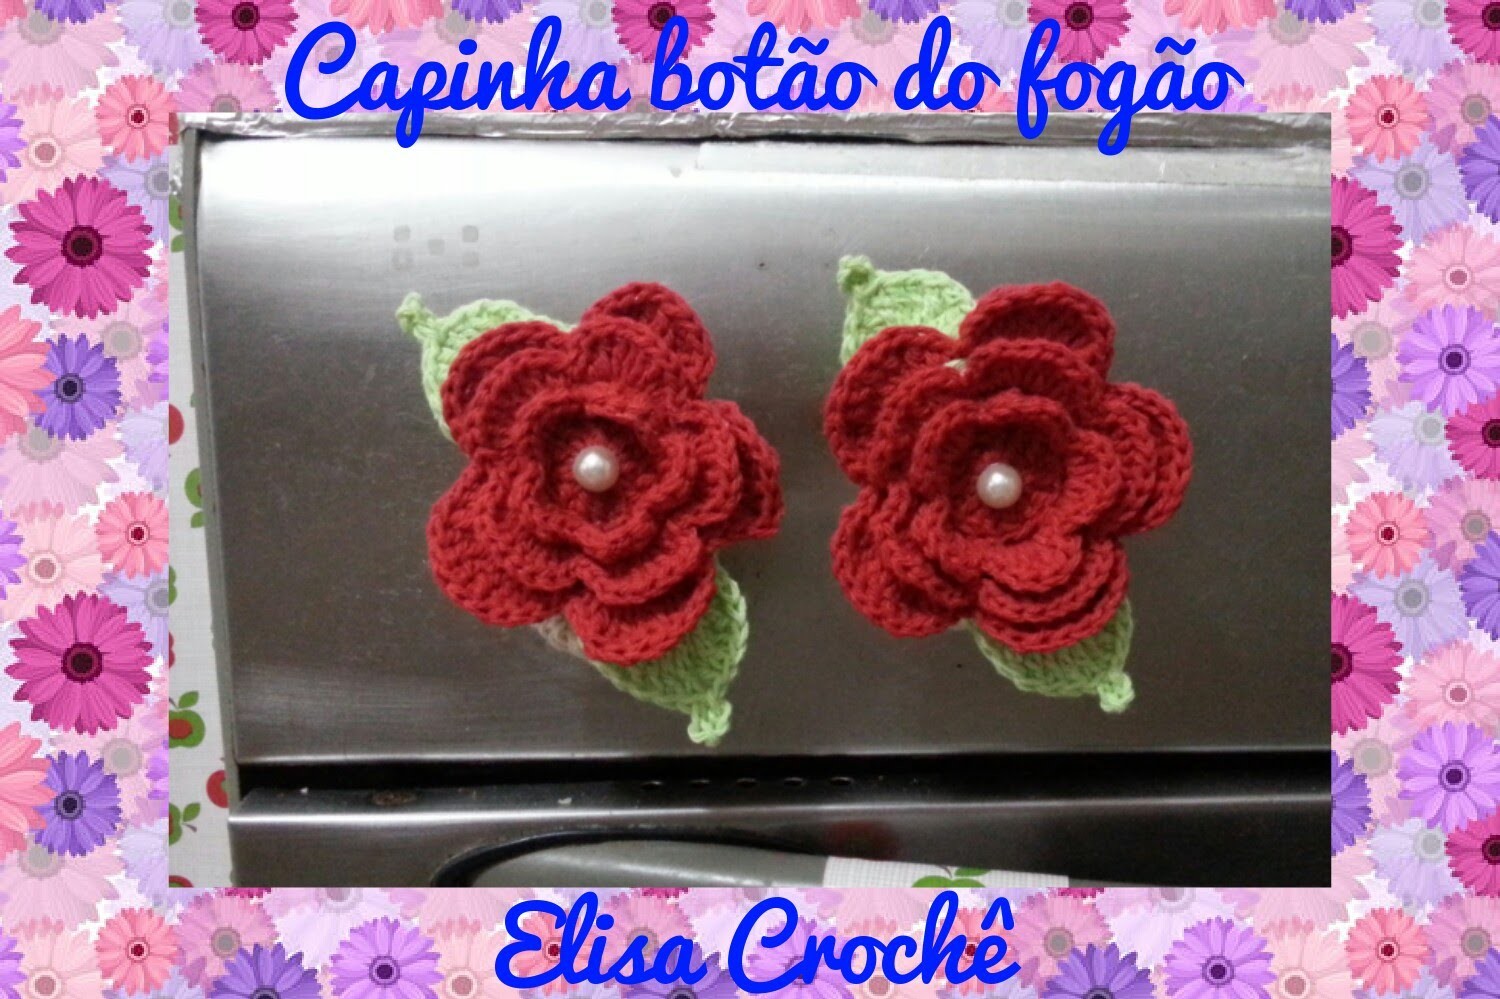 Versão destros :Capinha para botão do fogão flor moranguinho em crochê # Elisa Crochê